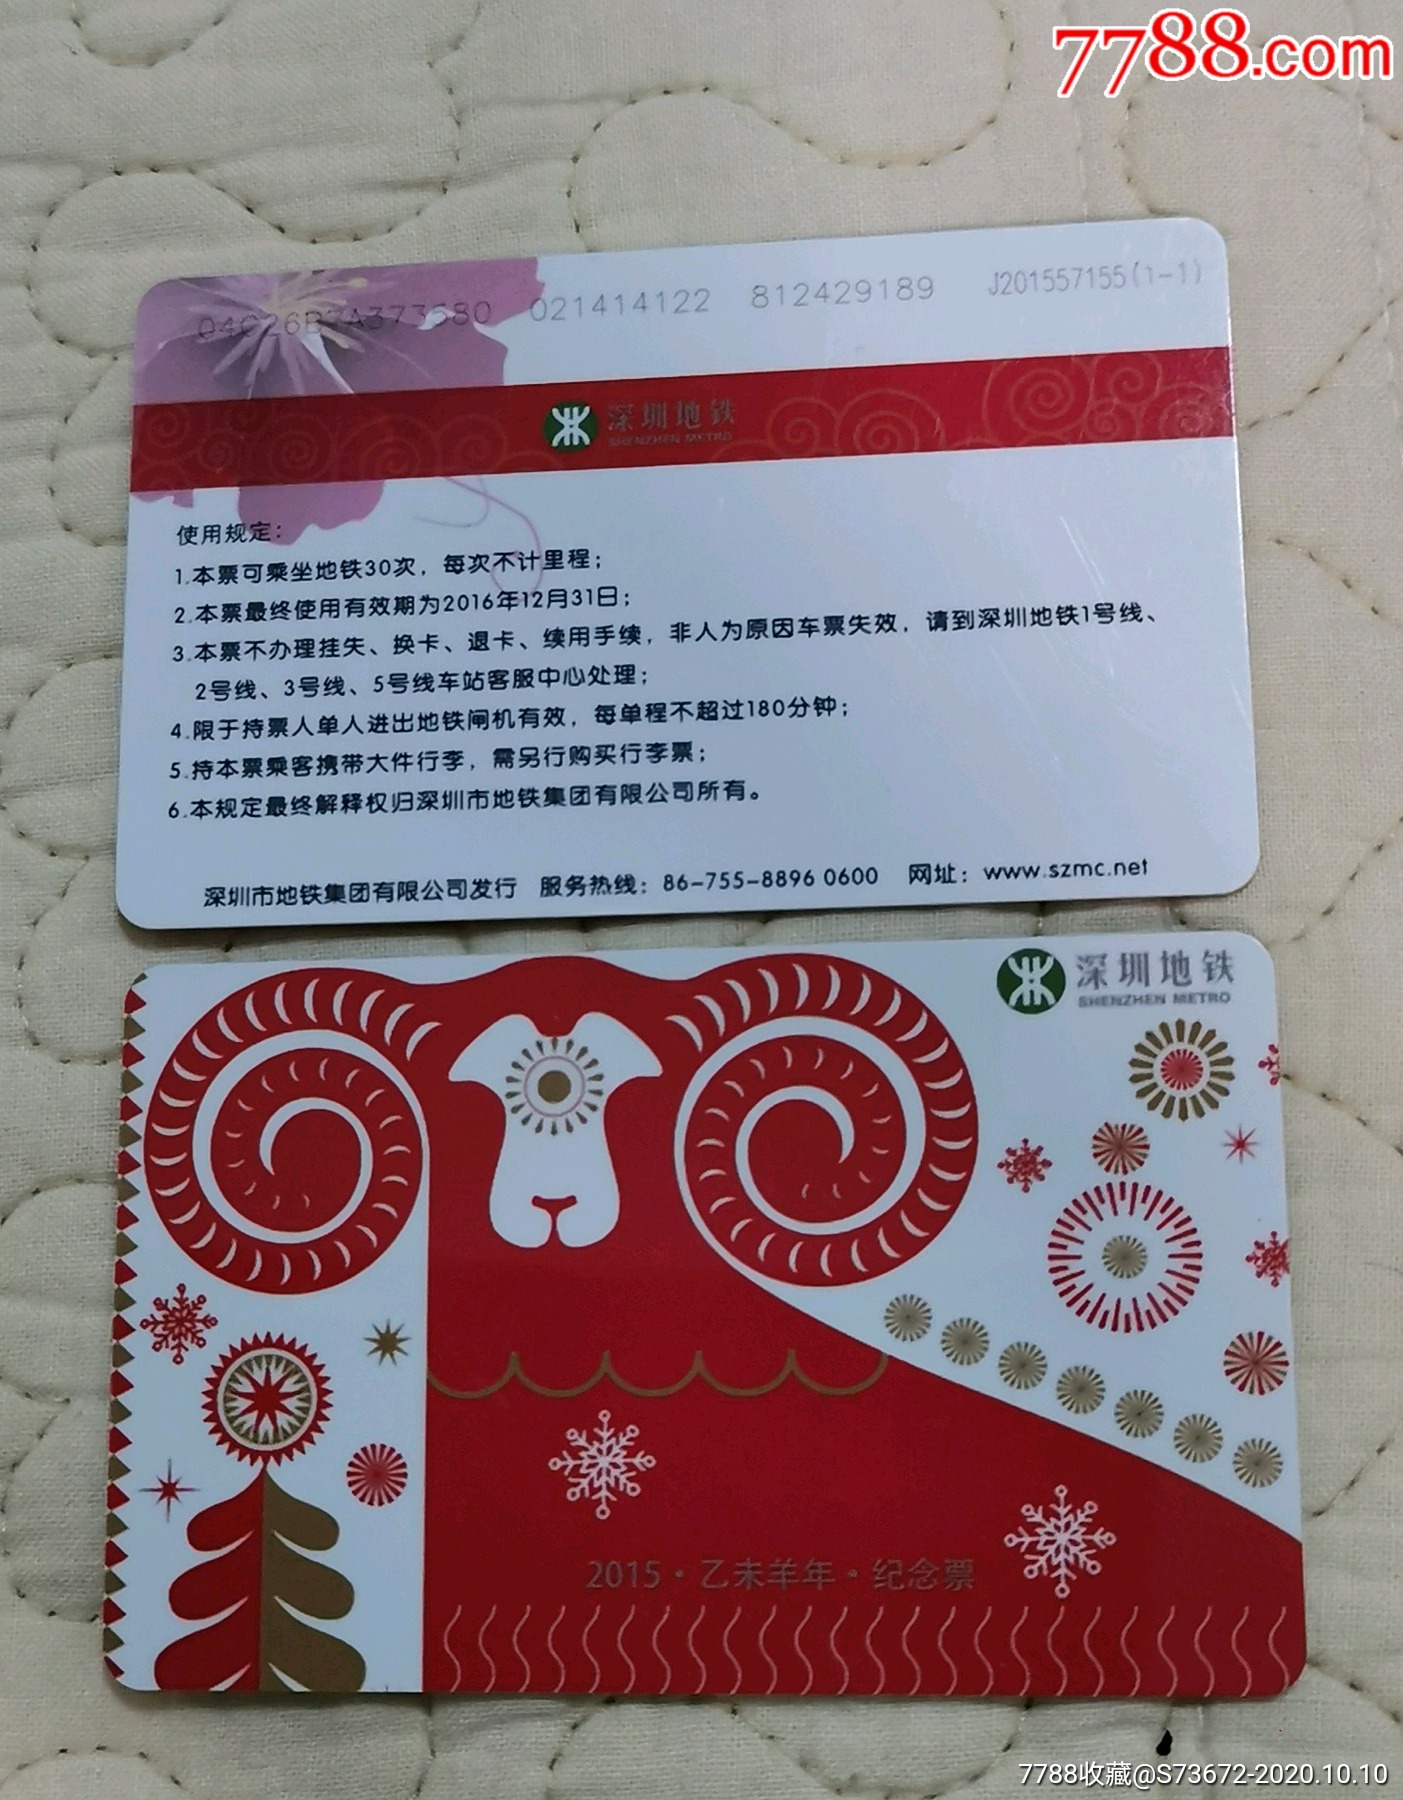 2018年深圳地铁卡卡通画纪念卡一张成套_公交/交通卡_图片价格_收藏交易_7788集卡网